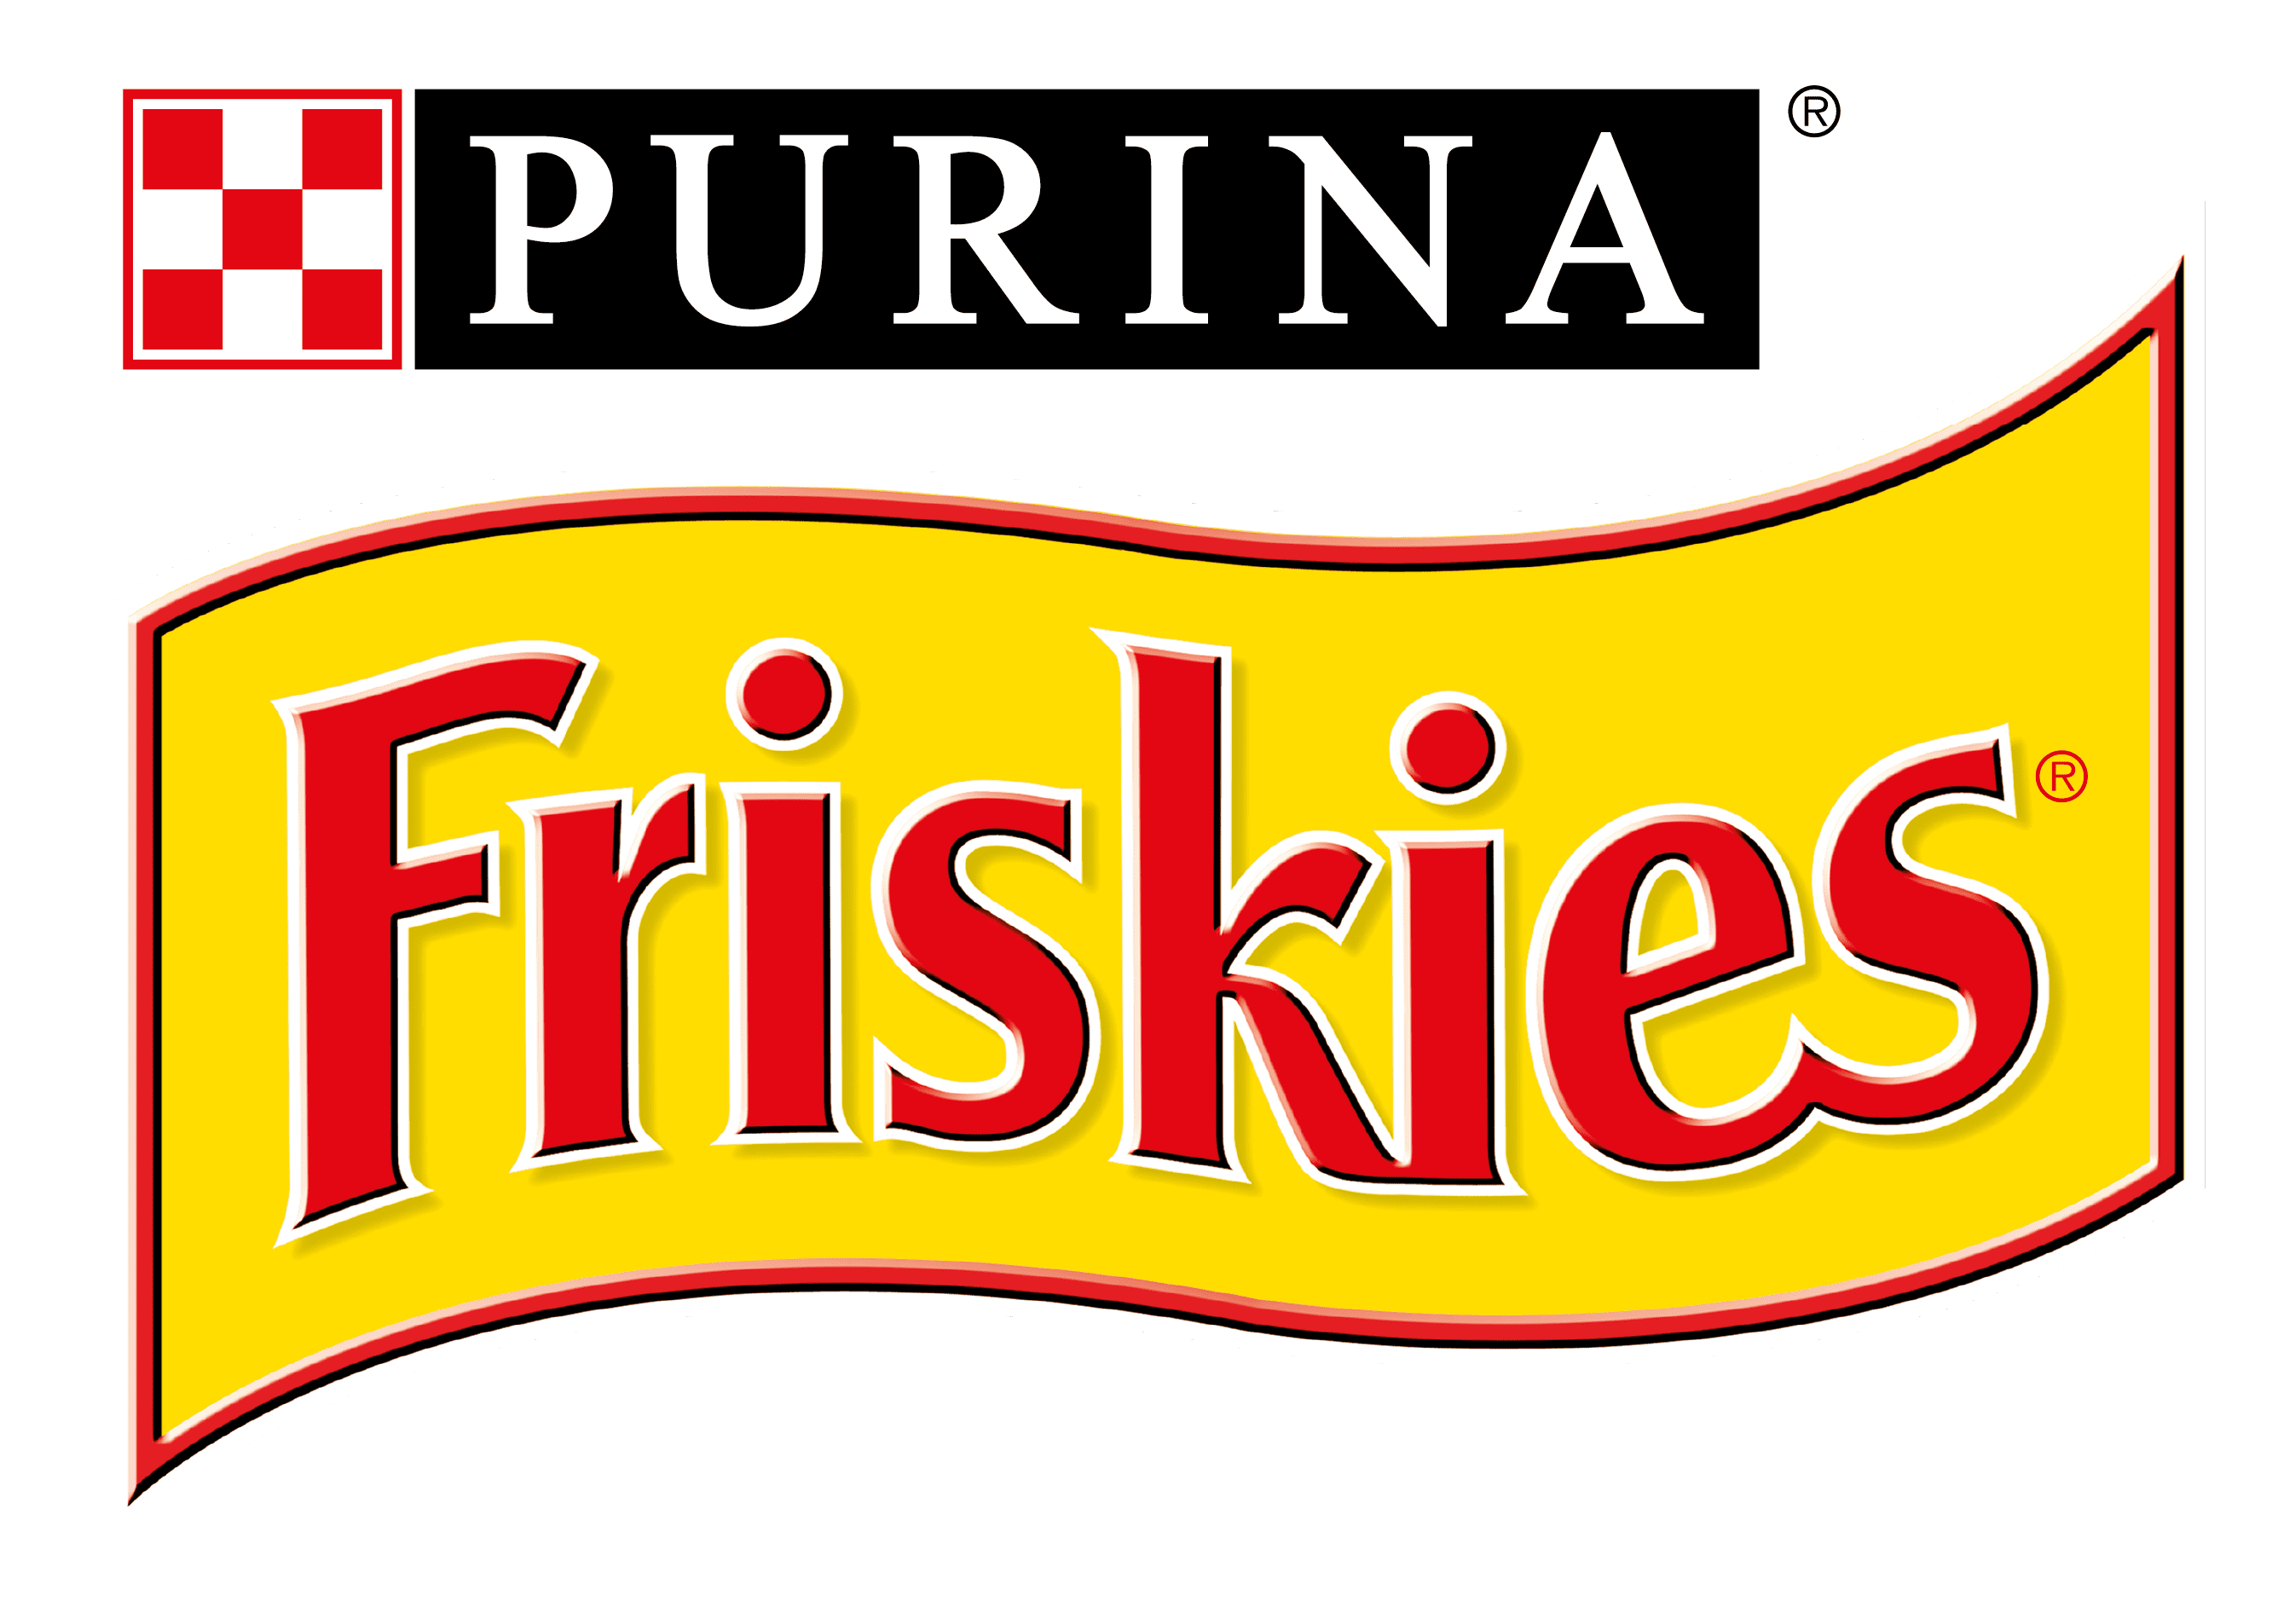 Purina - Friskies Treats